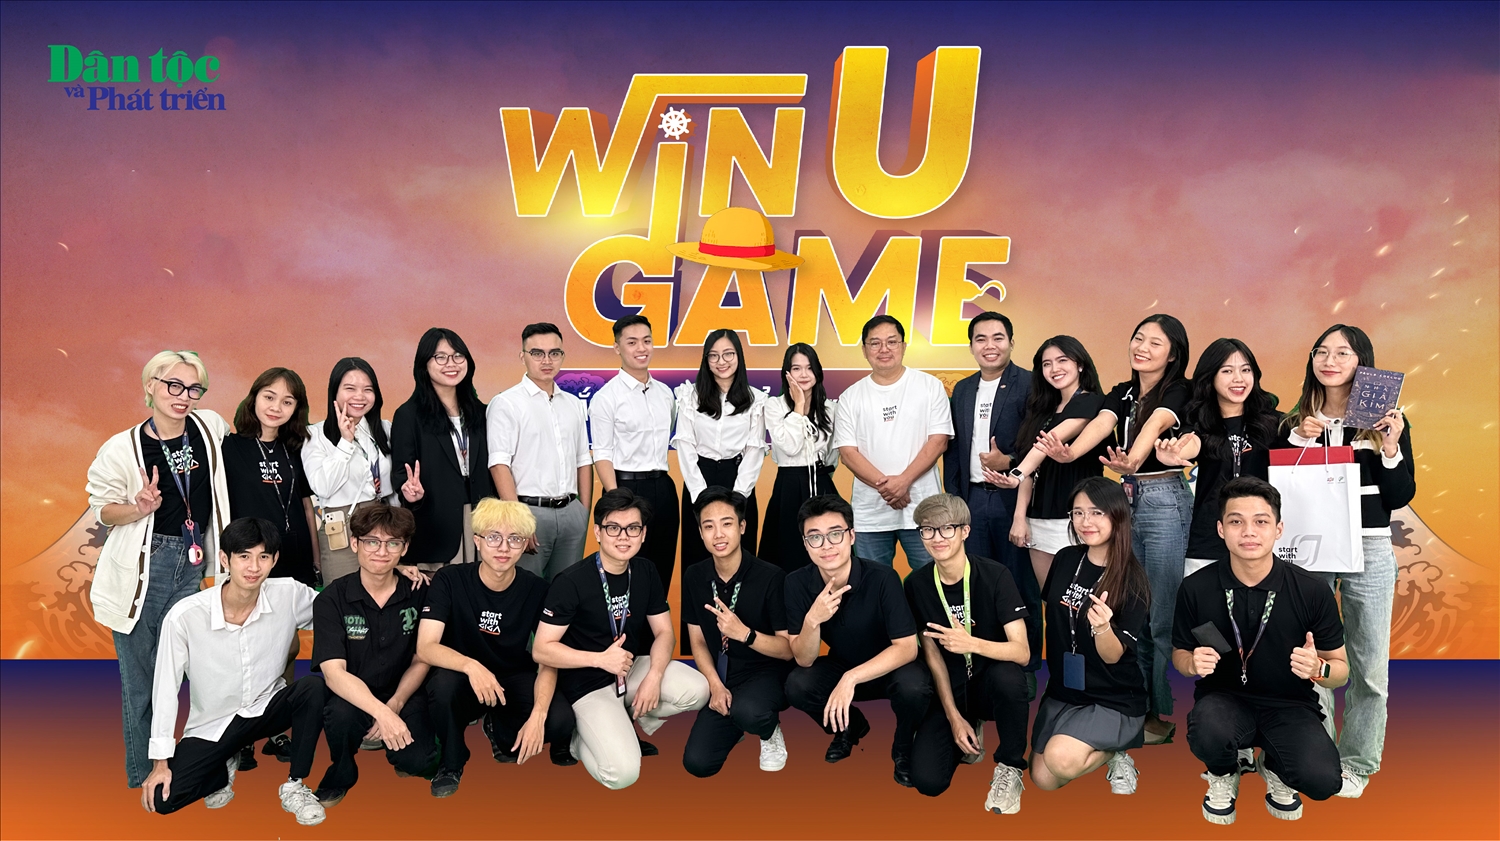 Talkshow “Win U Game 3 - Bắt sóng để vượt sóng” đã thành công tốt đẹp, đem lại nhiều kiến thức bổ ích cho các bạn học sinh, sinh viên